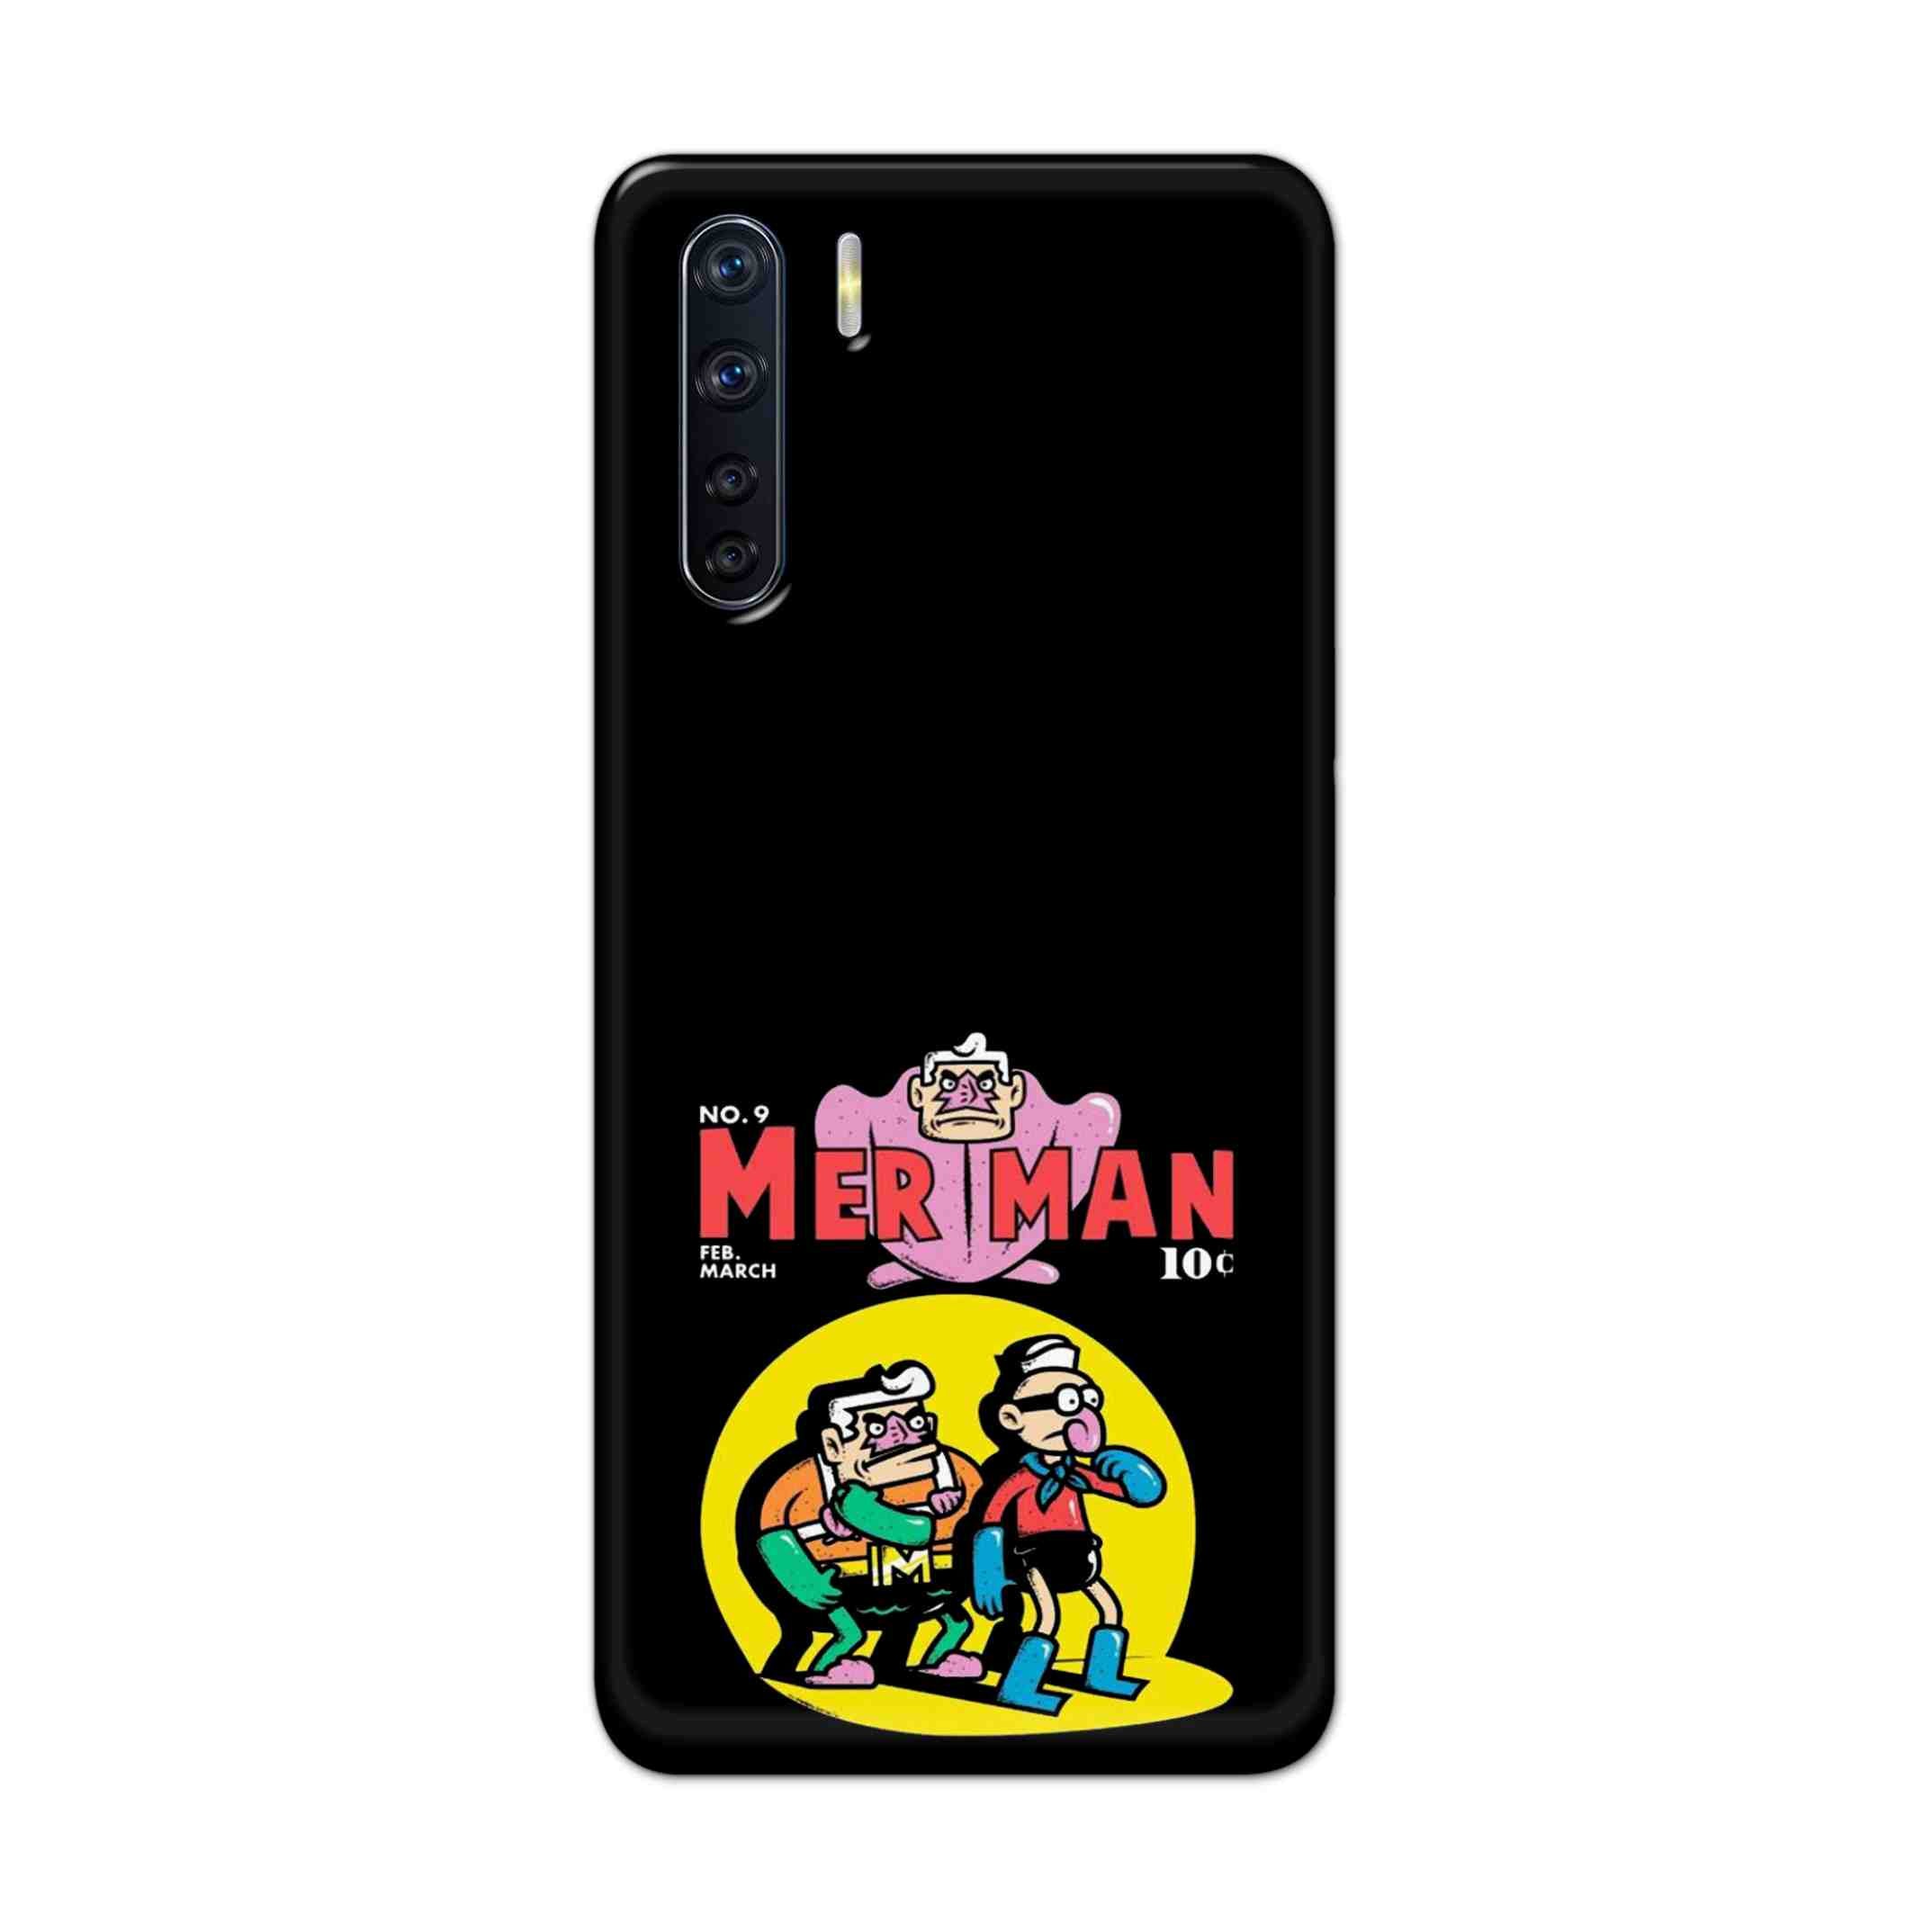 Buy Merman Hard Back Mobile Phone Case Cover For OPPO F15 Online